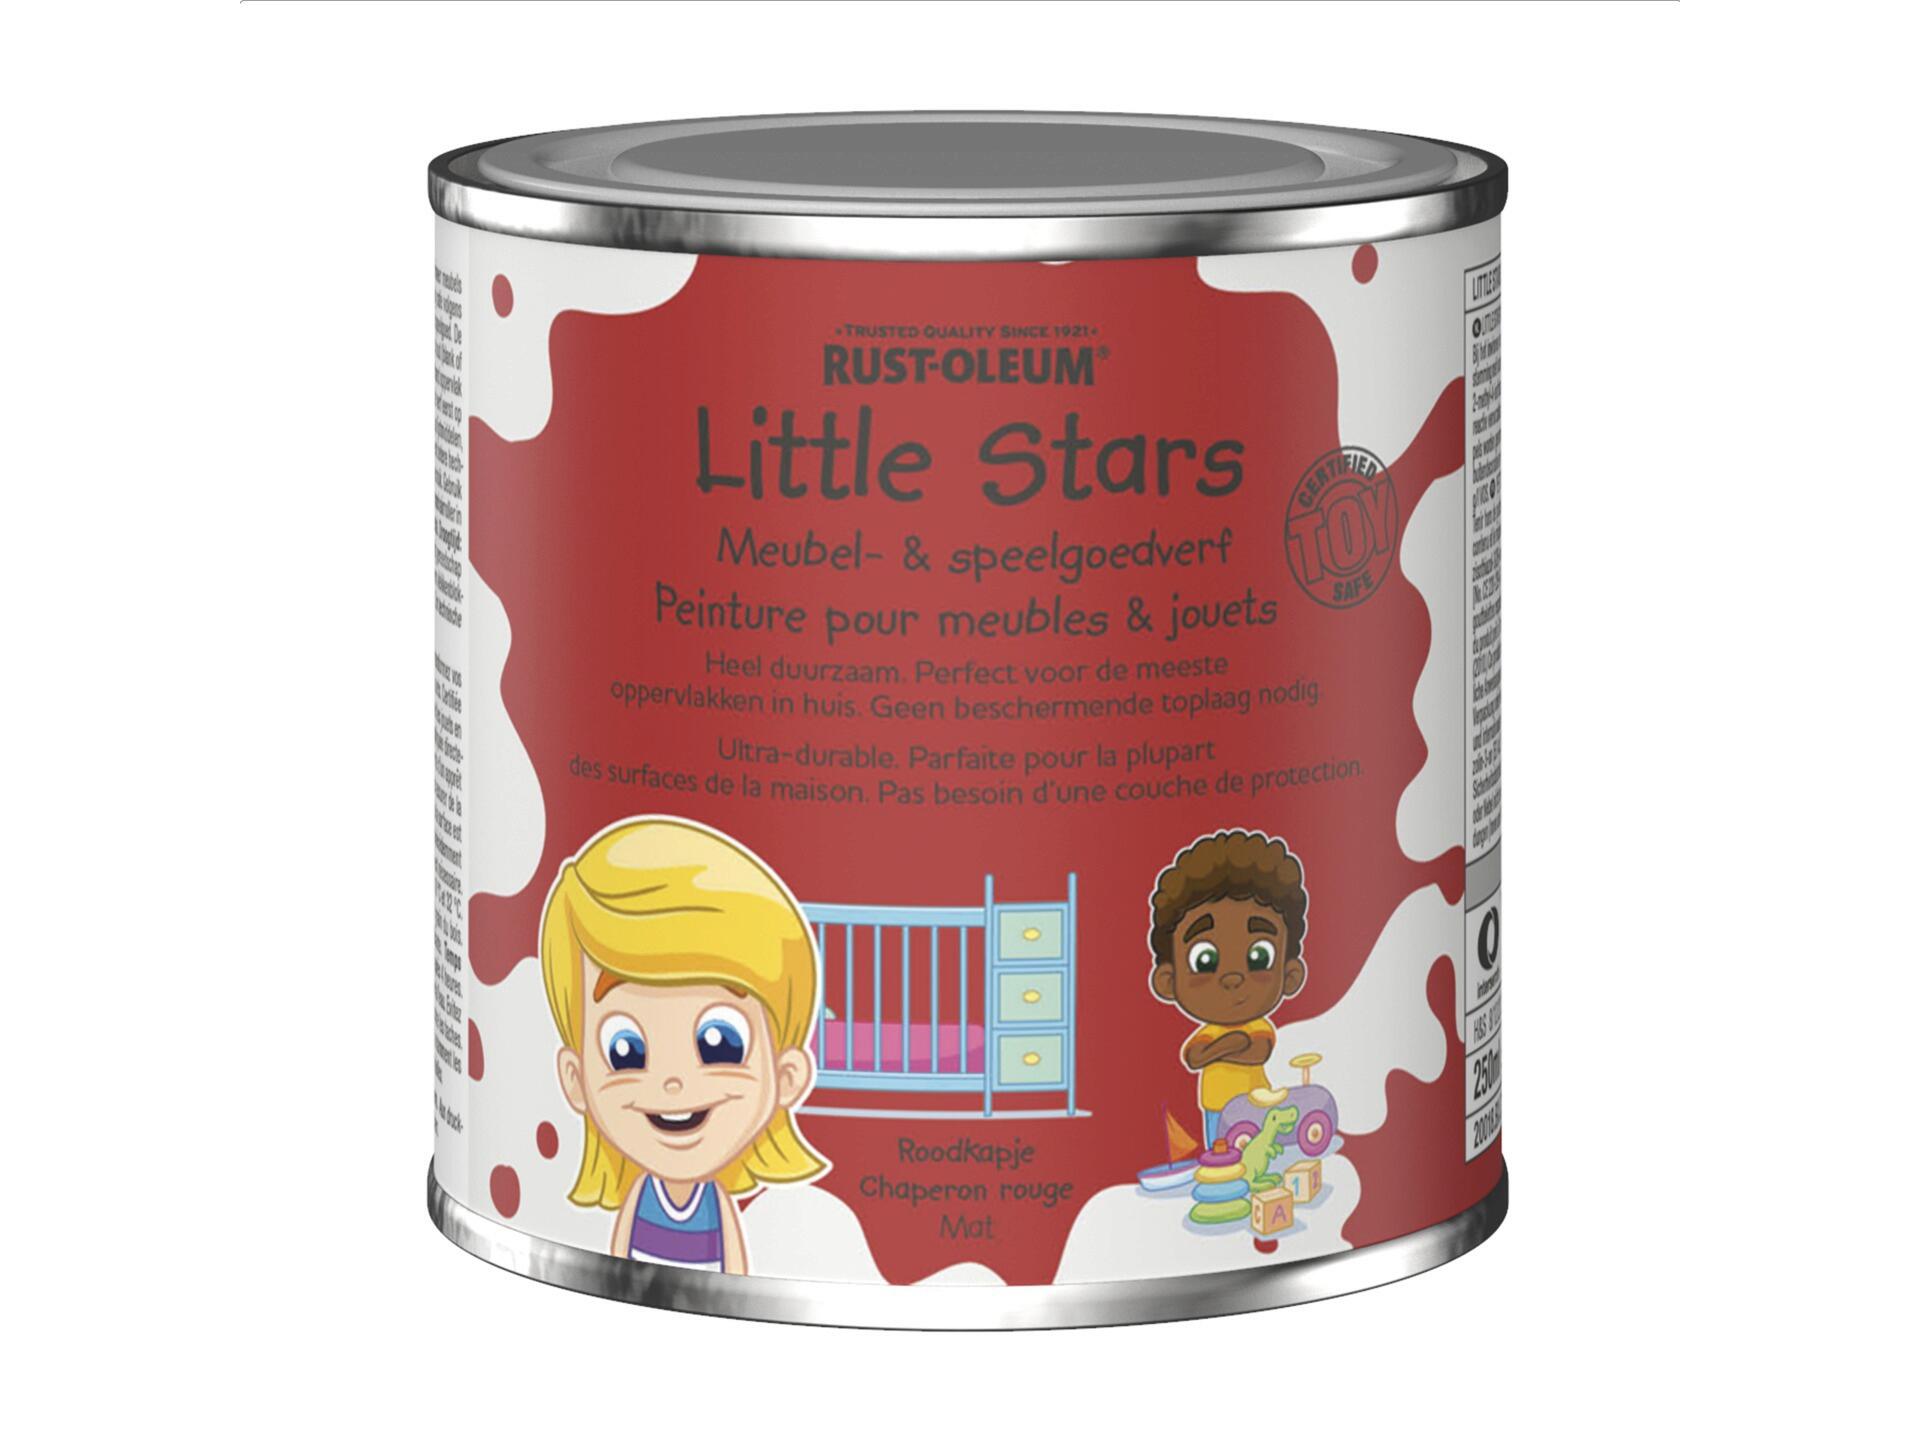 Rust-oleum Little Stars meubel- en speelgoedverf 250ml roodkapje